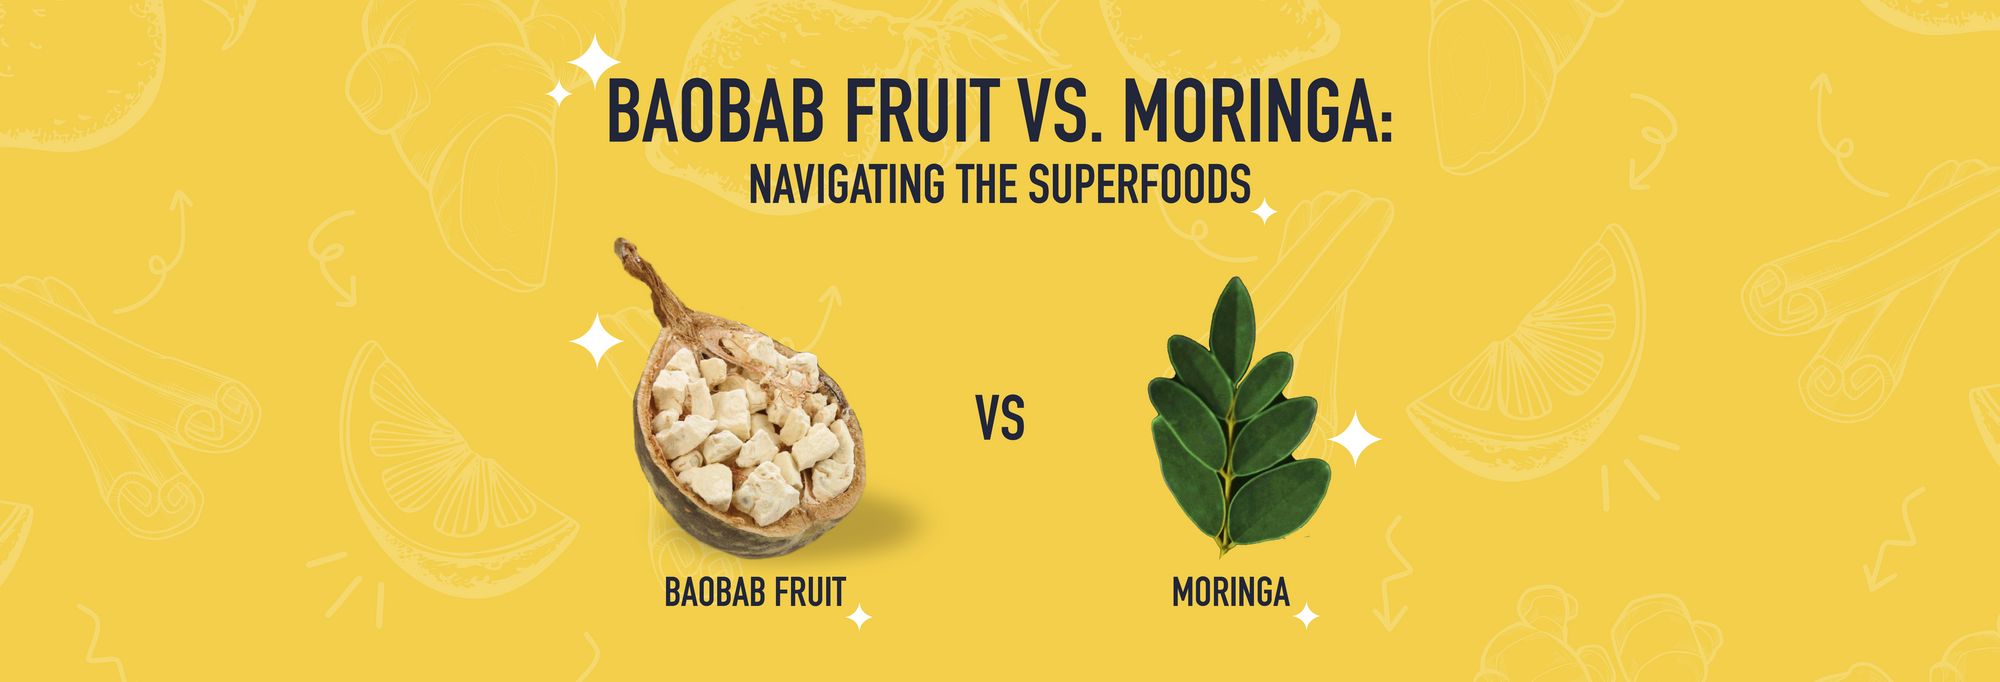 Baobab Fruit VS Moringa - Navigating the Superfoods